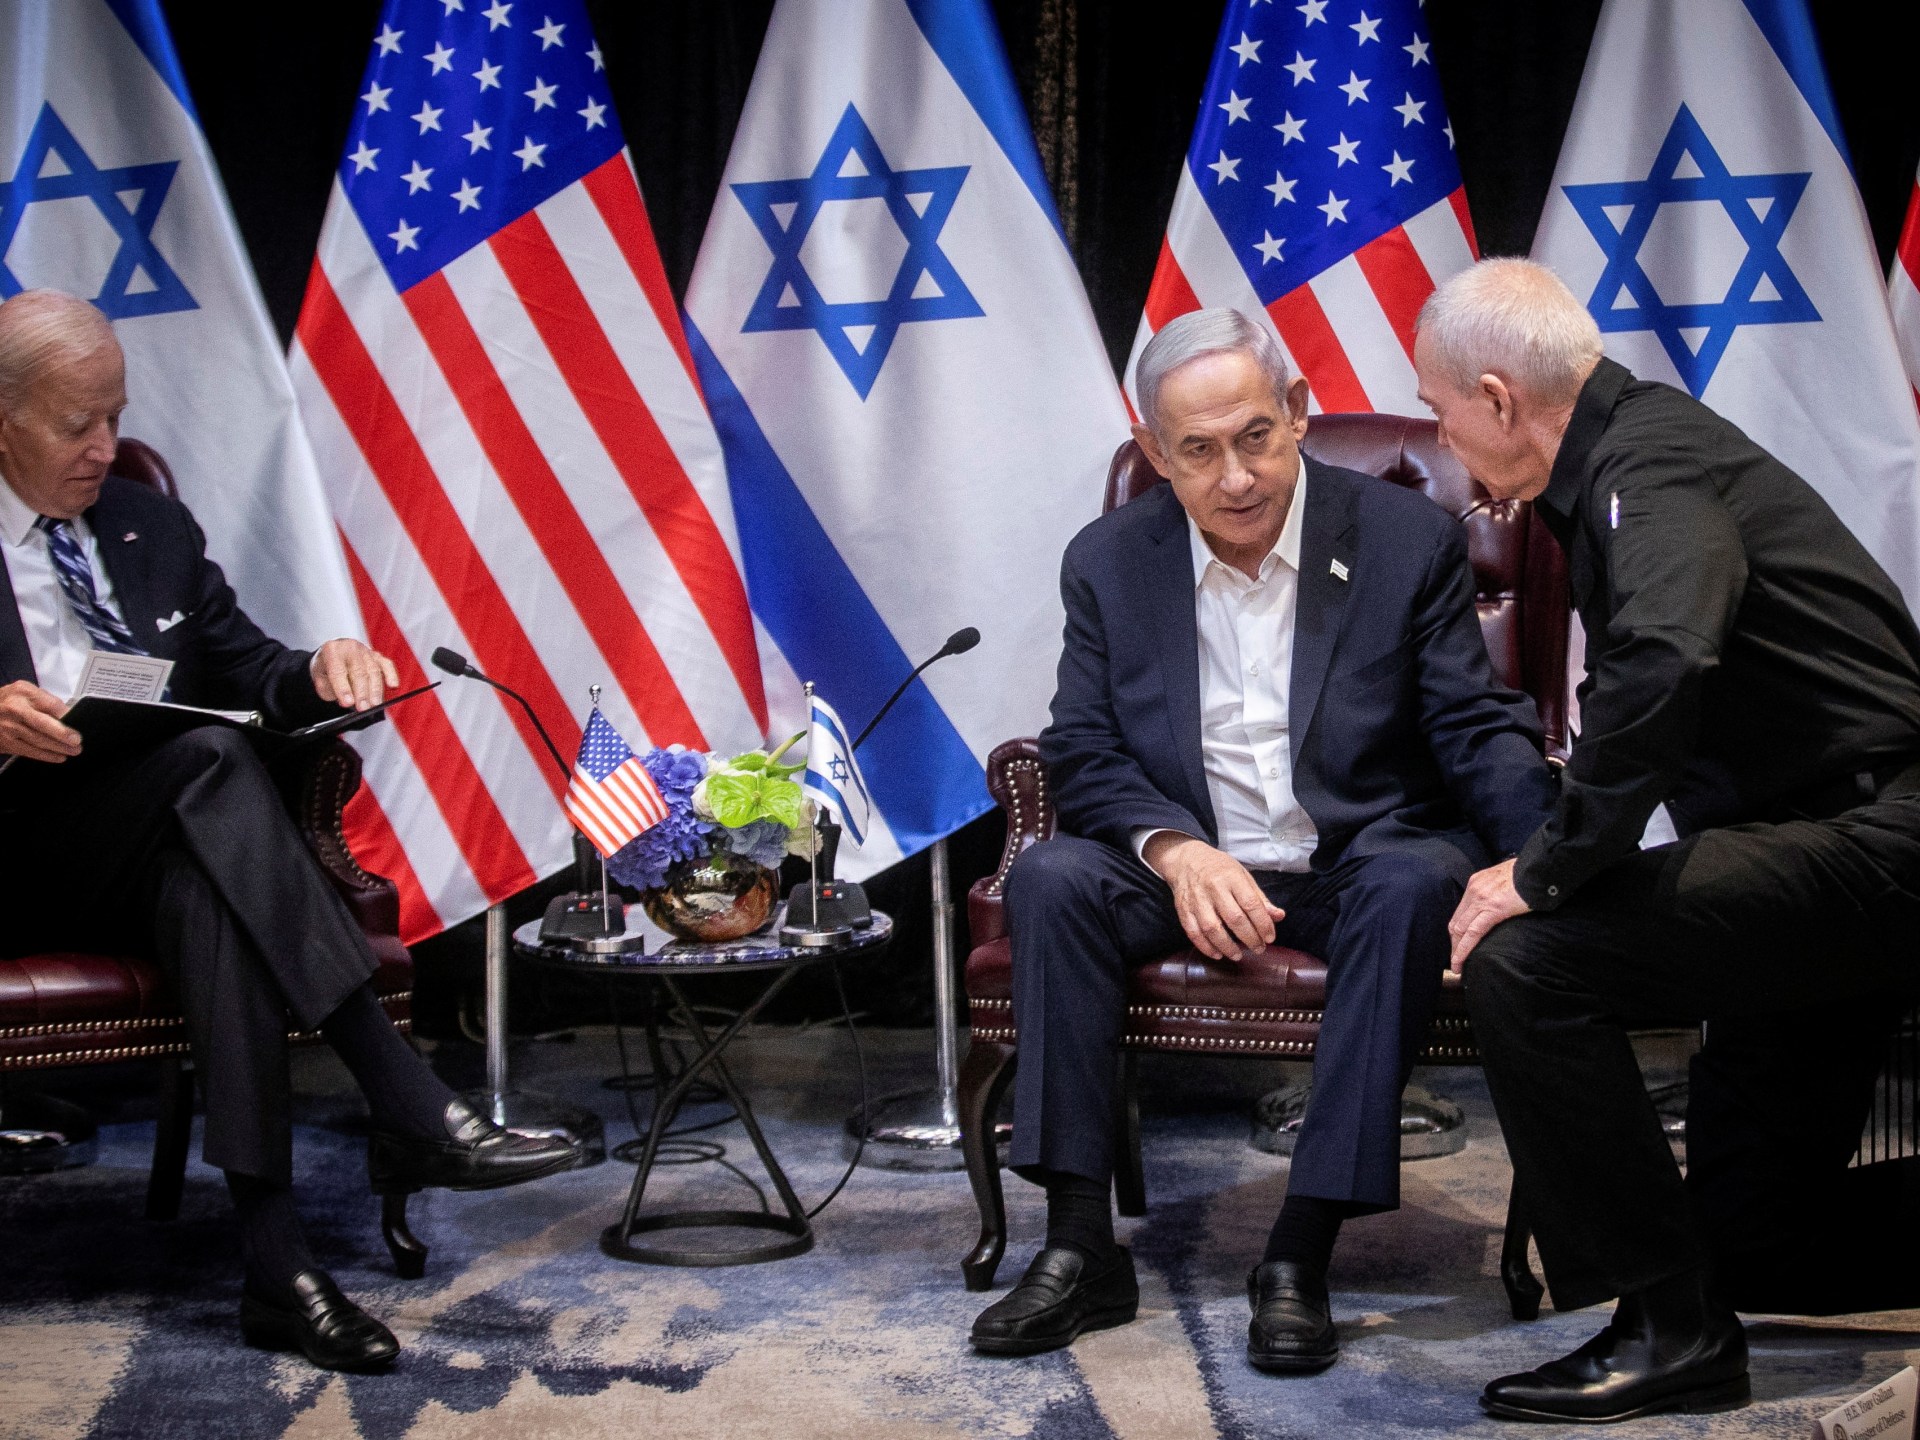 بلومبيرغ: الولايات المتحدة وأوروبا يضغطان على إسرائيل لتأجيل غزو غزة برا | أخبار جولة الصحافة – البوكس نيوز